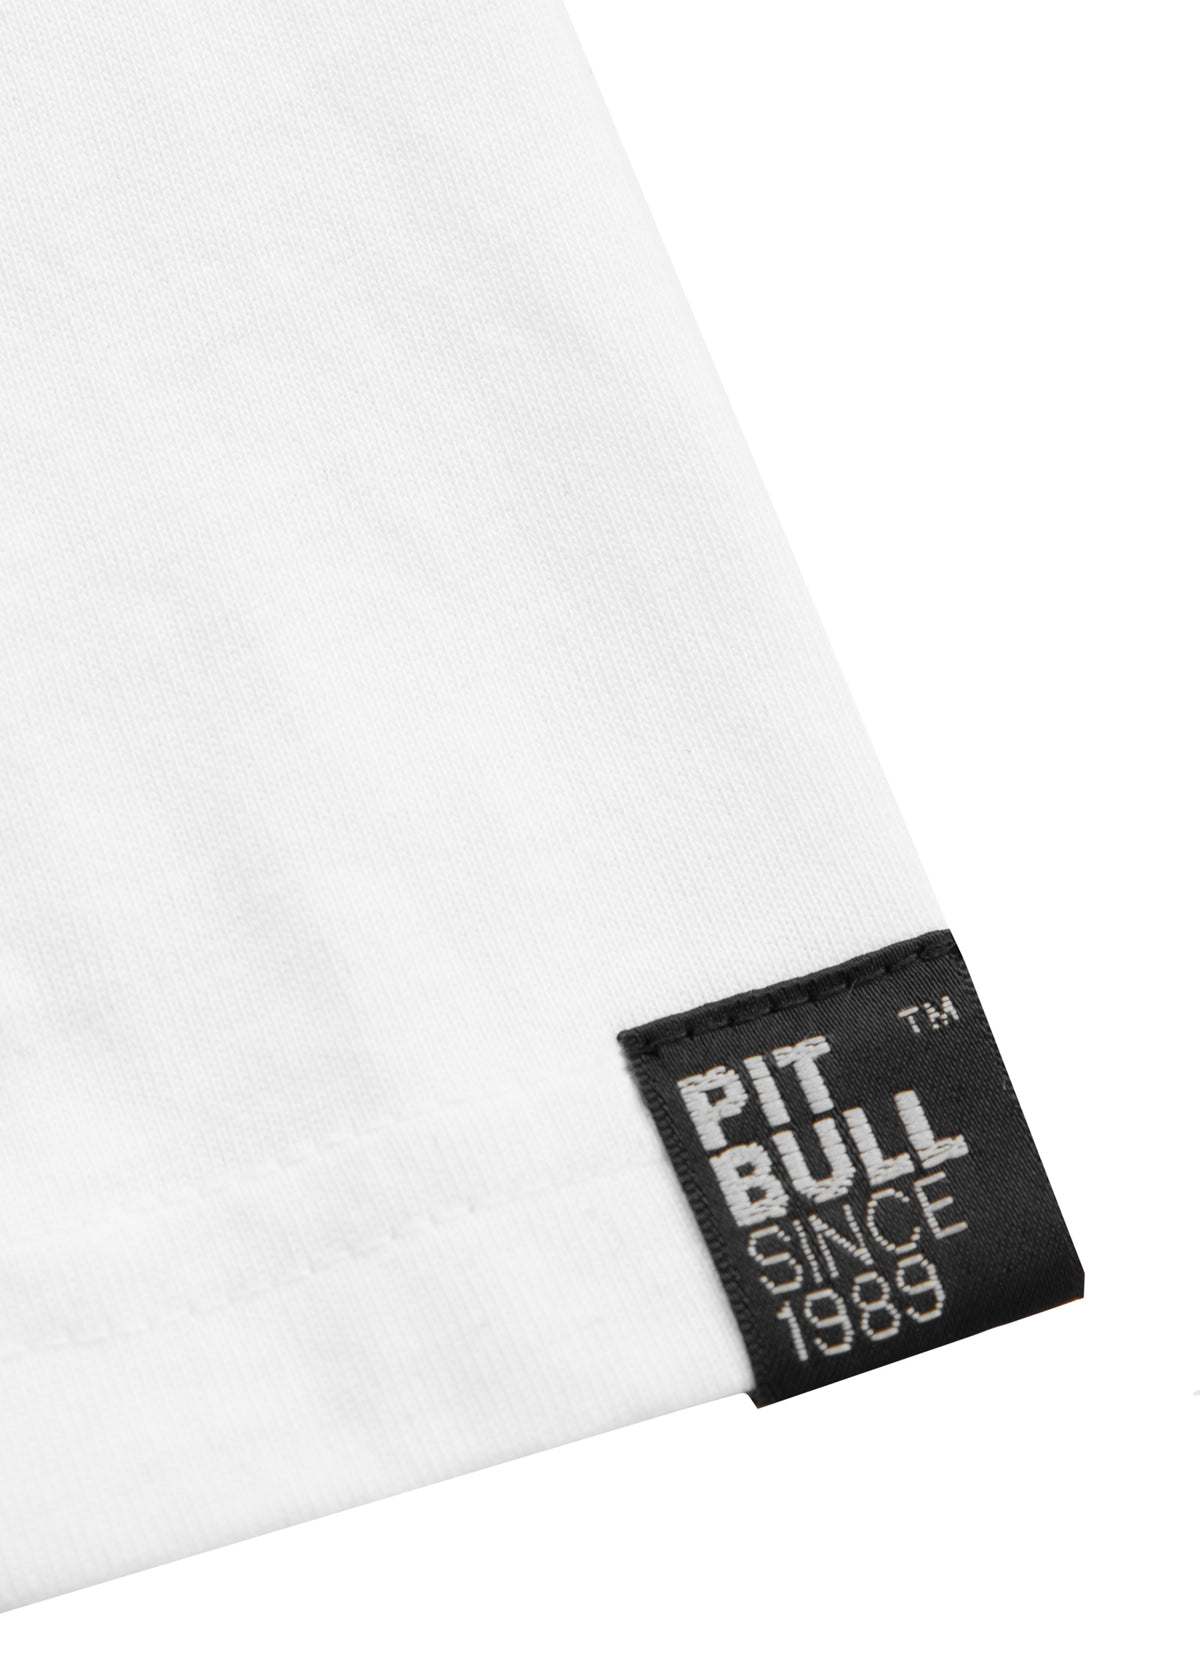 HILLTOP Lightweight White T-shirt - Pitbullstore.eu